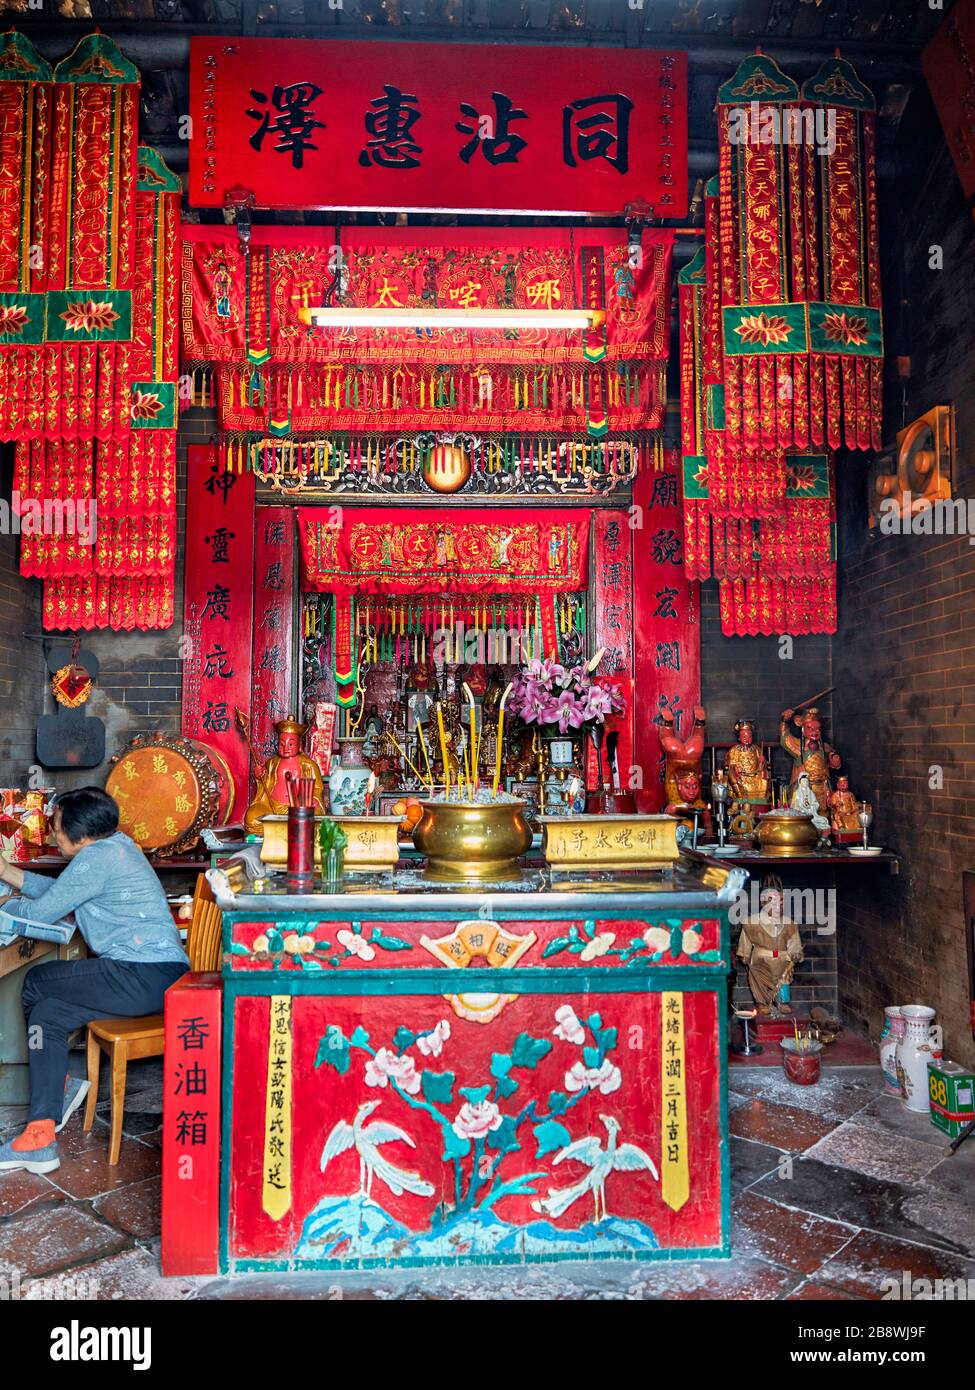 Altar im Na-Tcha-Tempel, der im Jahre 1888 erbaut wurde und der Anbetung der chinesischen Volksgottheit Na Tcha gewidmet ist. Macau, China. Stockfoto